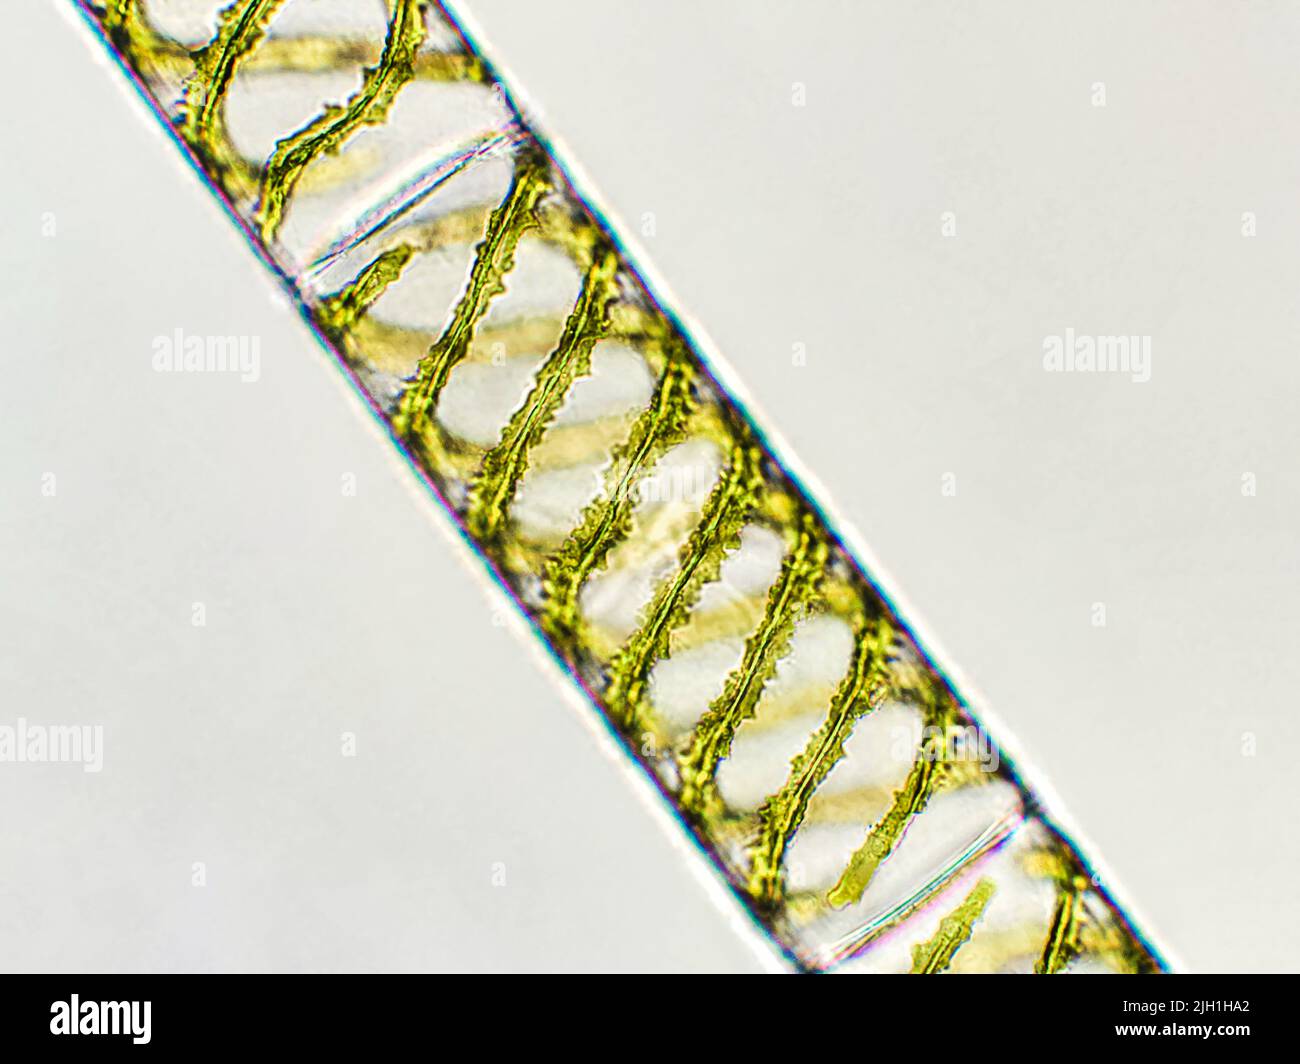 Spirogyra sp. algae under microscopic view, Chlorophyta Stock Photo